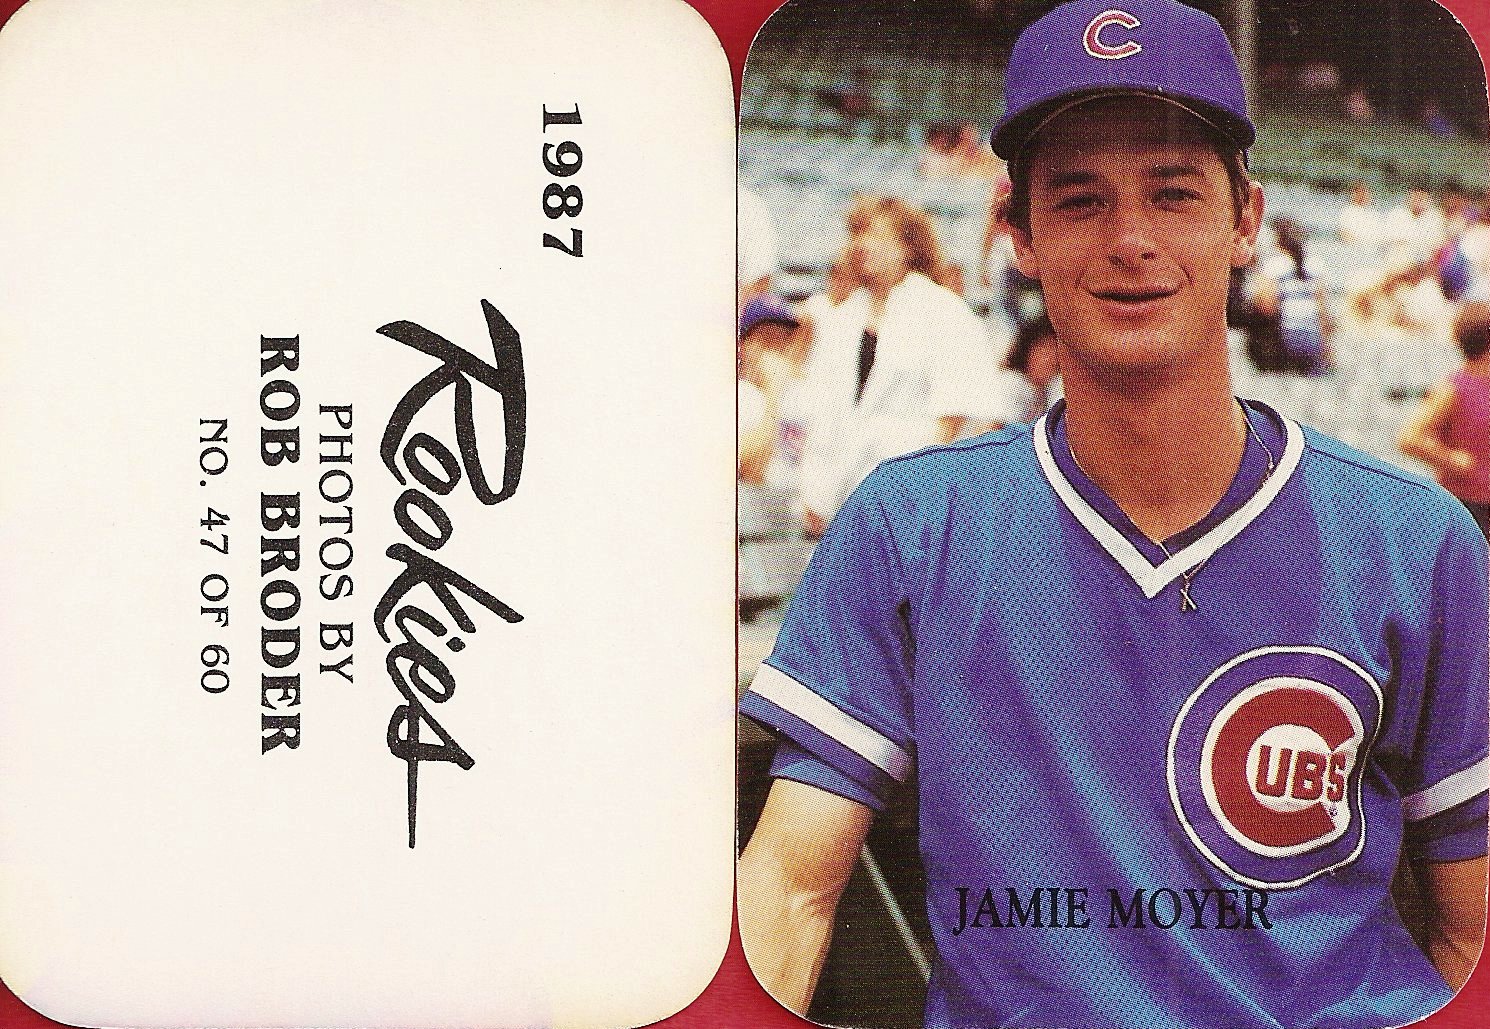 1987 Rob Broder Rookie (Jamie Moyer)